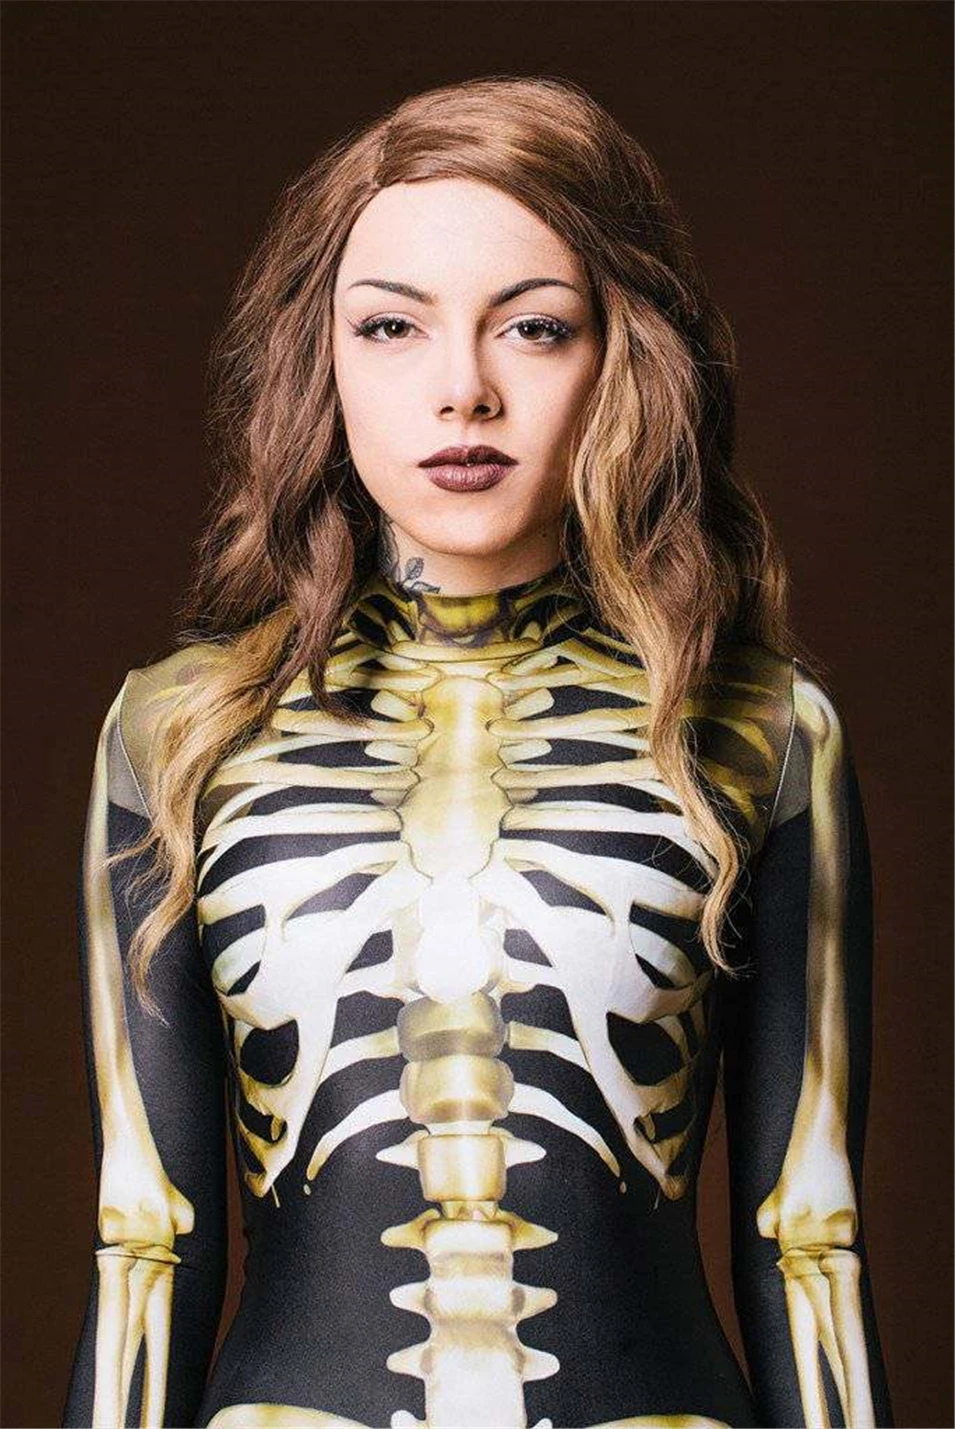 Halloween Cosplay Jumpsuit with Golden Skeleton Print